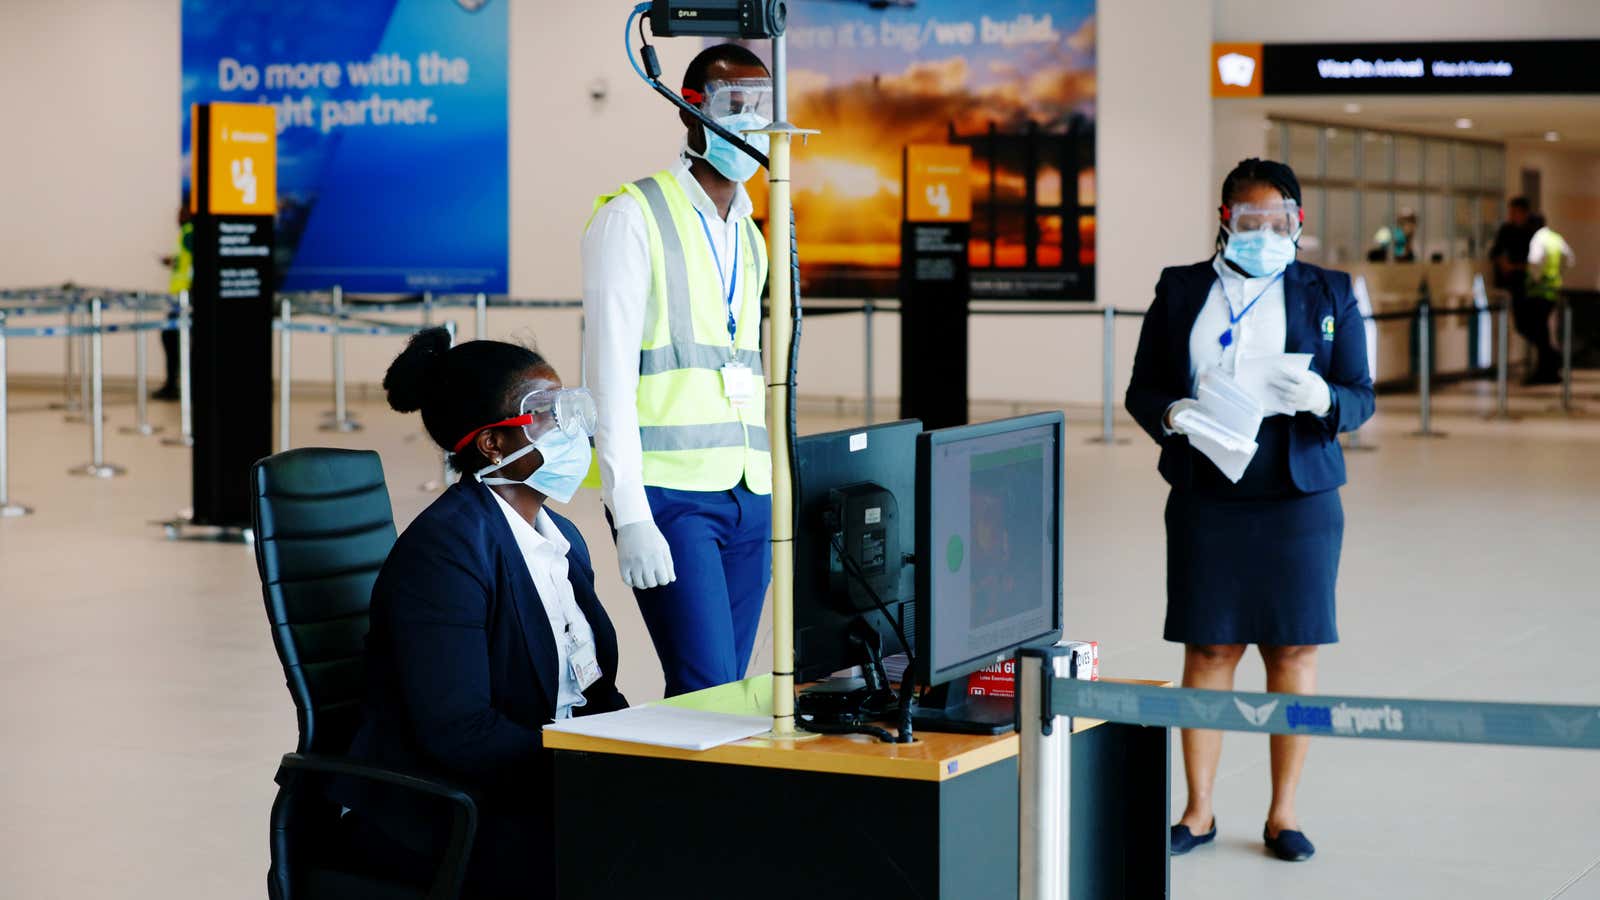 Airport checks for coronavirus at Accra airport